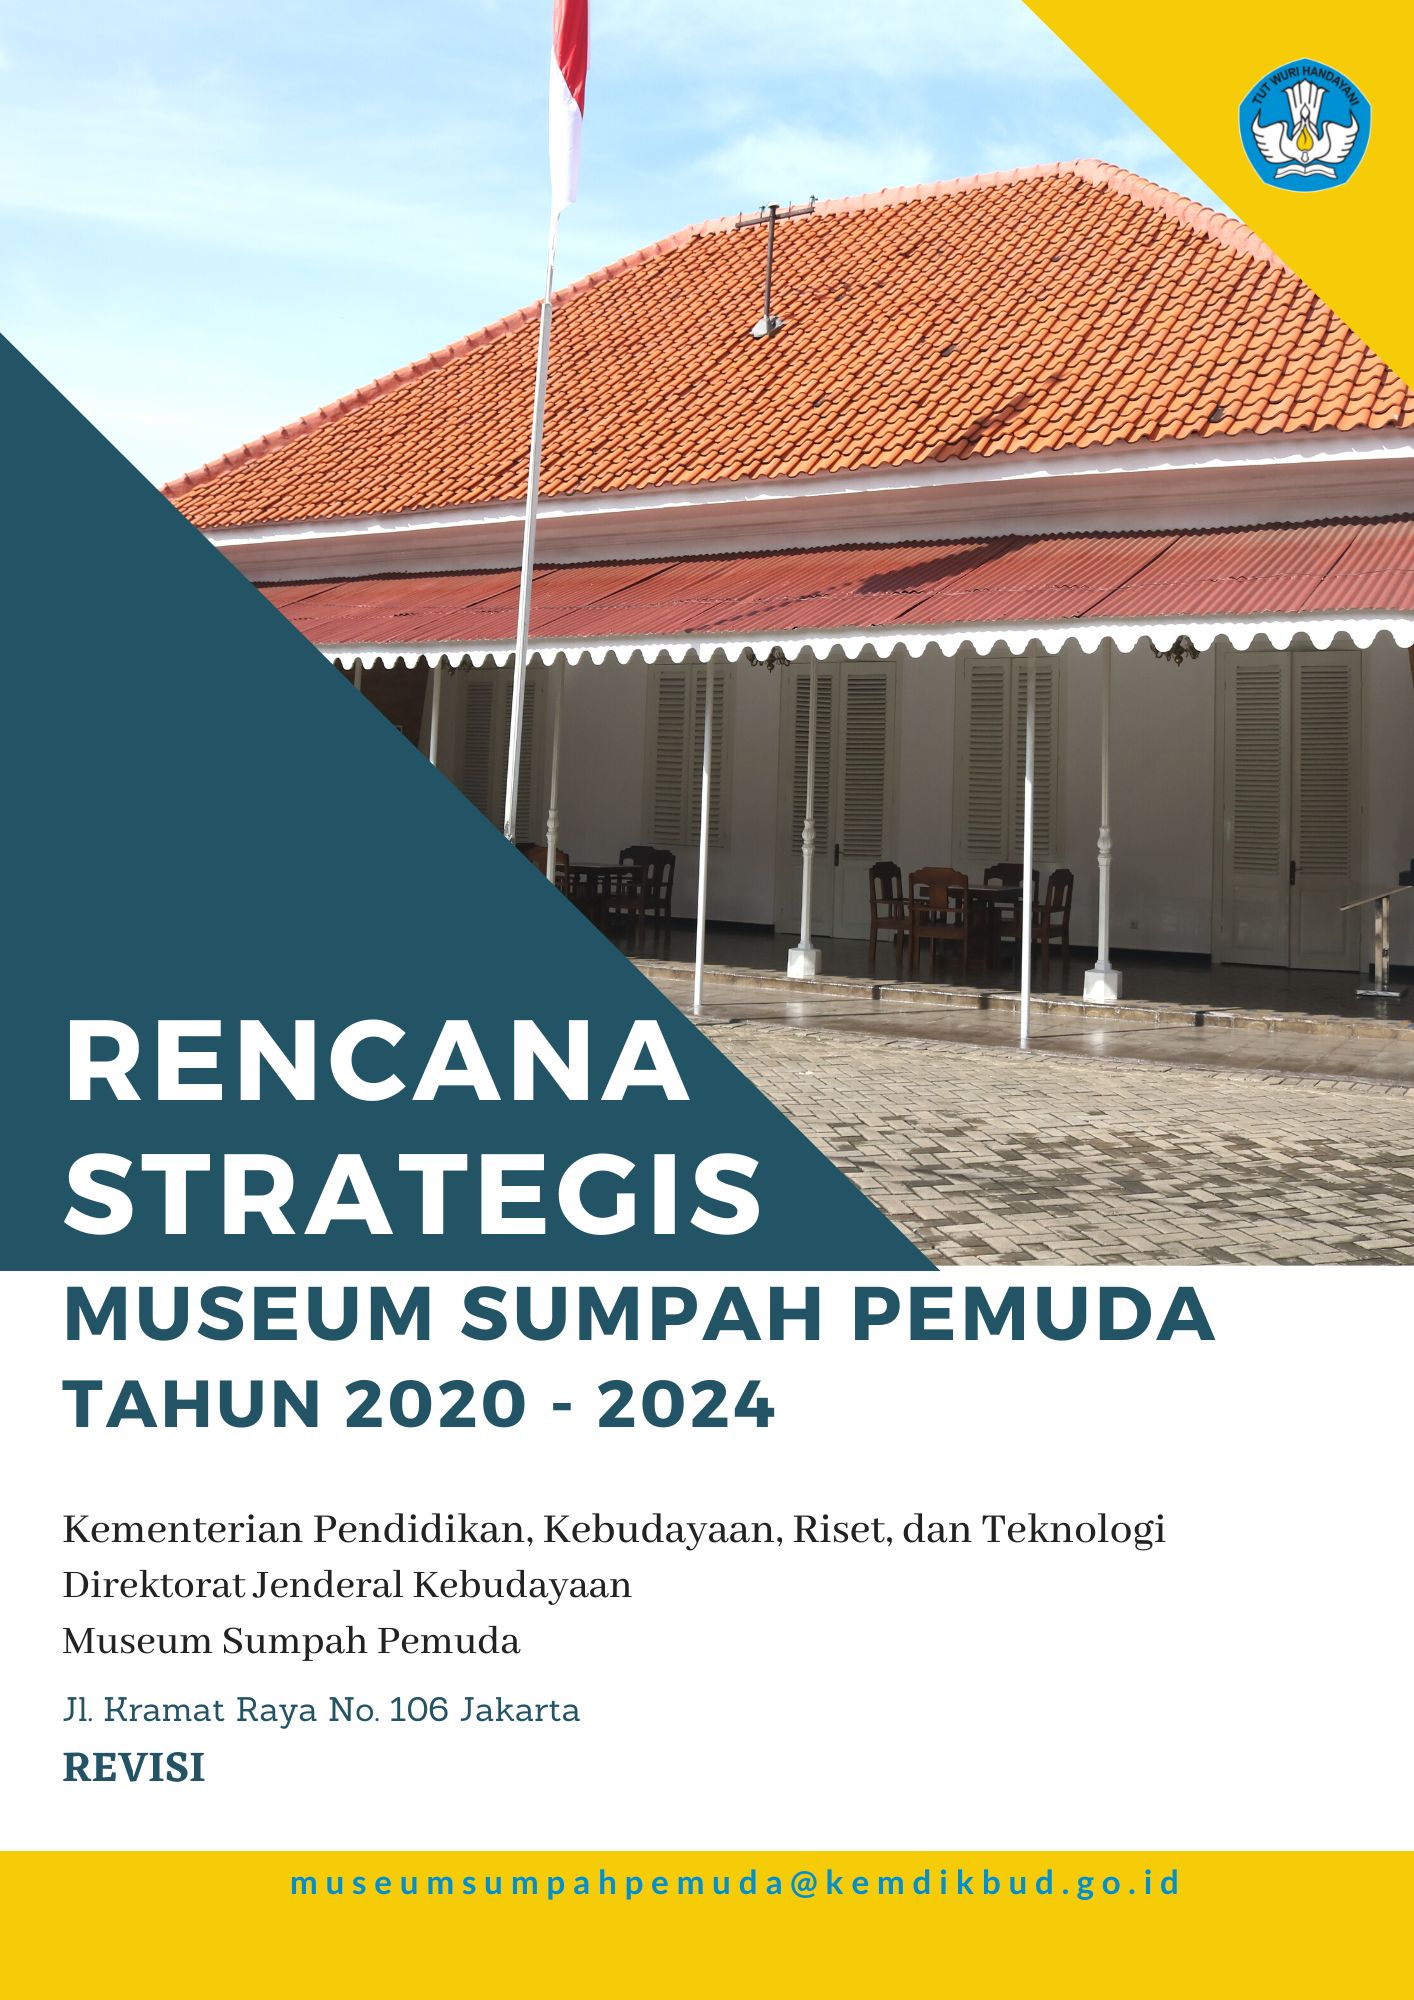 Renstra Revisi Museum Sumpah Pemuda 2020-2024